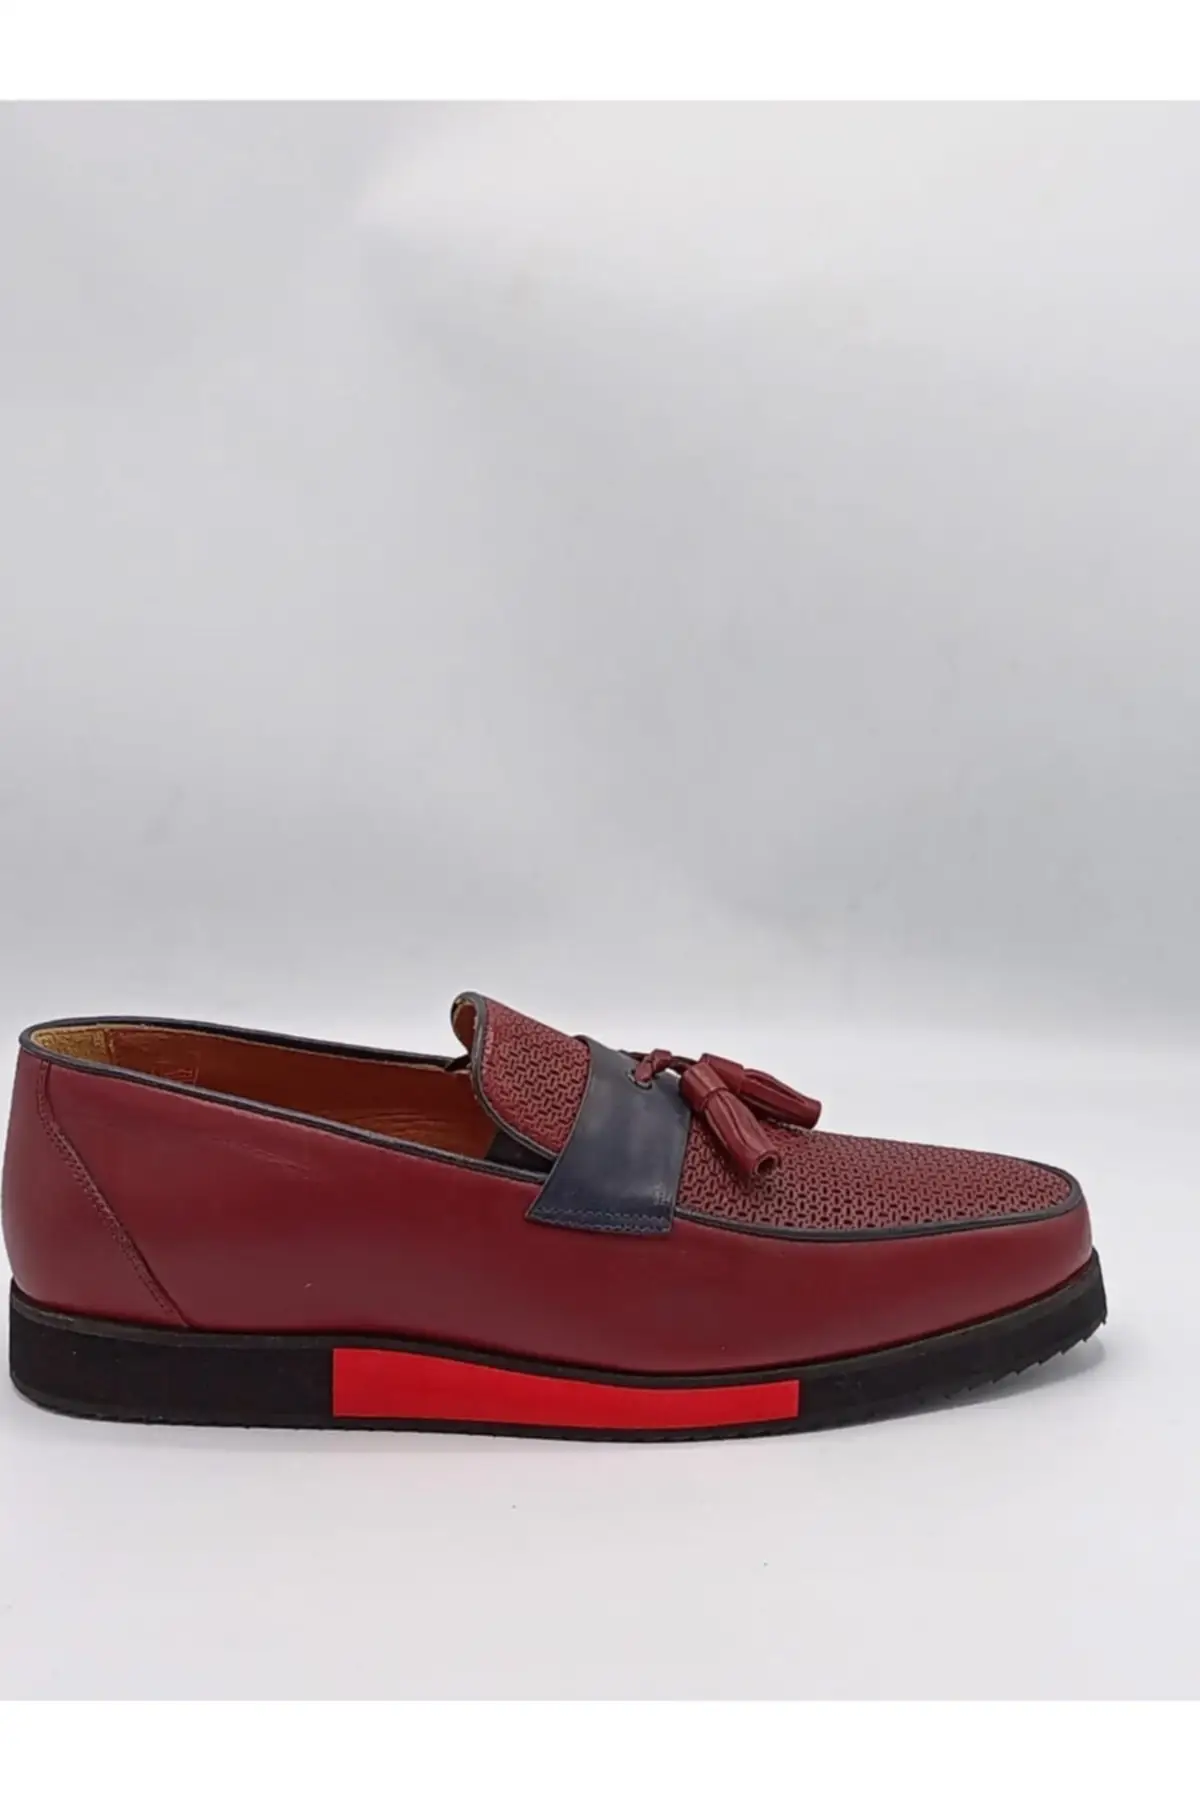 

Мужские ортопедические ботинки Paul, бордовые красные повседневные лоферы из натуральной кожи, удобная обувь, 63751